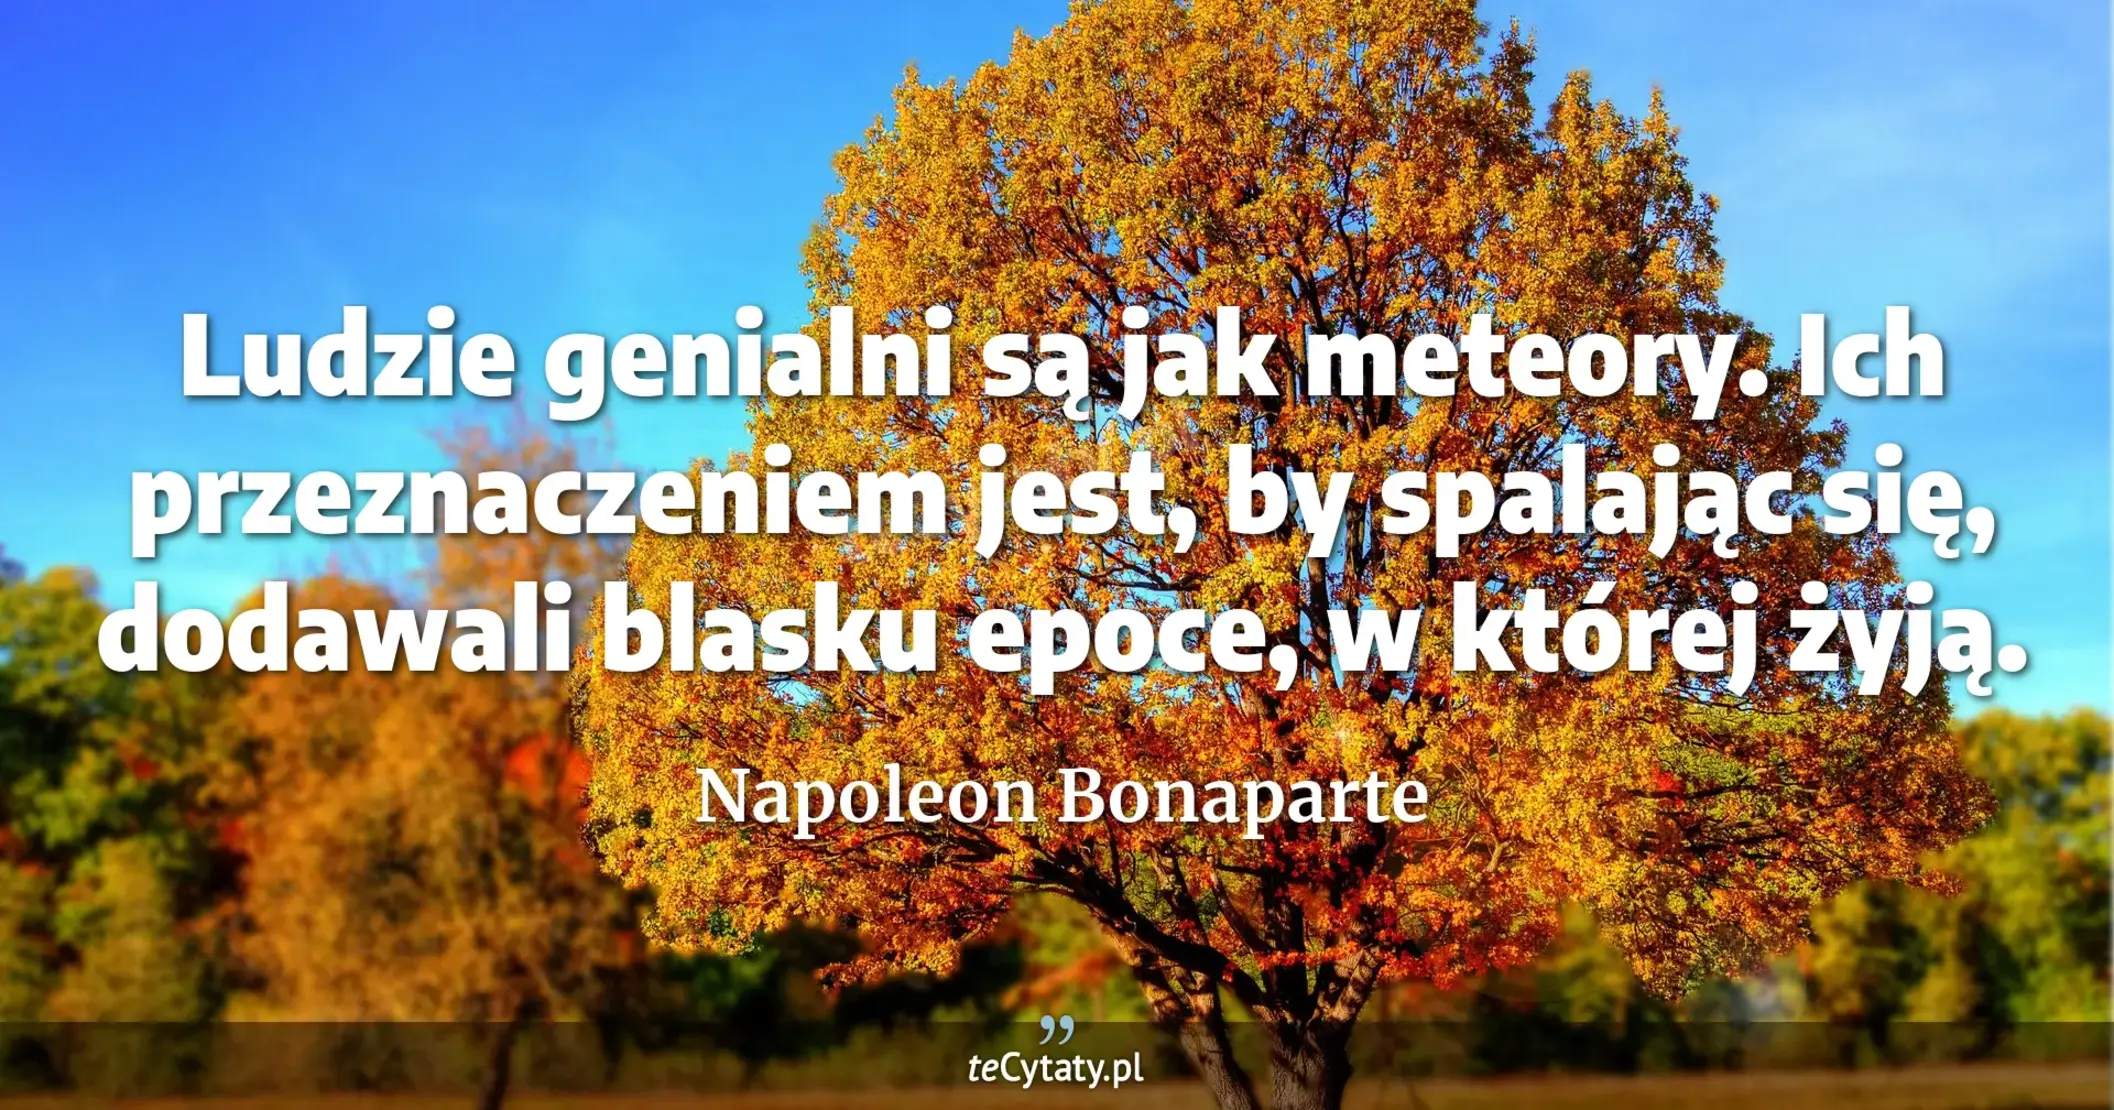 Ludzie genialni są jak meteory. Ich przeznaczeniem jest, by spalając się, dodawali blasku epoce, w której żyją. - Napoleon Bonaparte